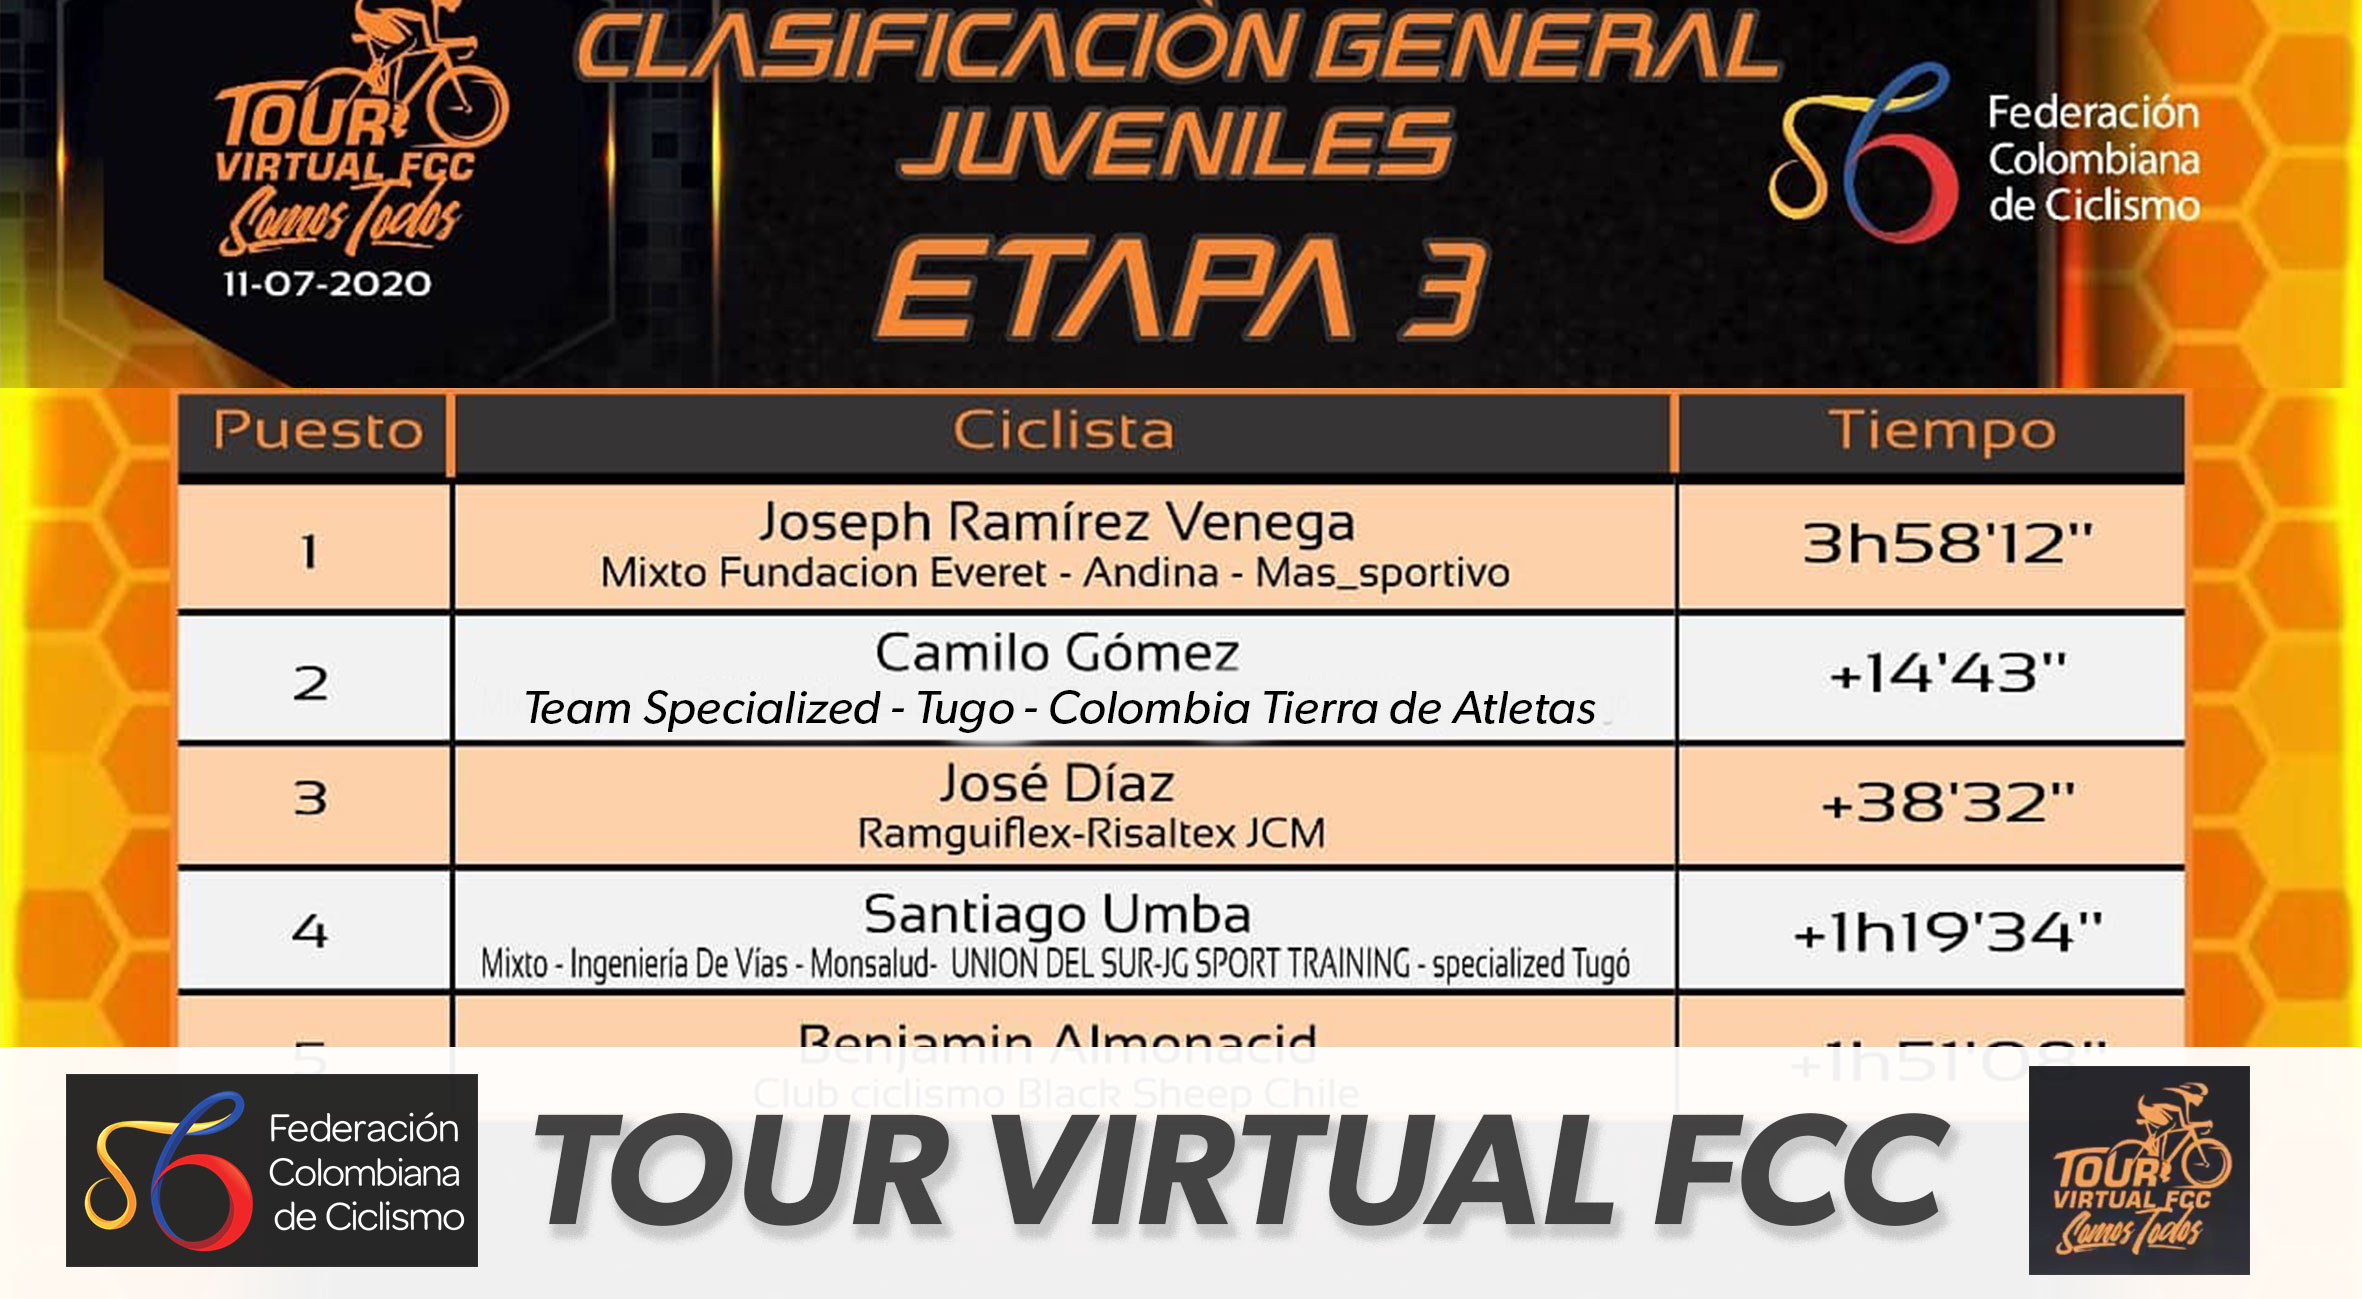 Camilo Gómez segundo en la clasificación general juvenil del Tour Virtual FCC